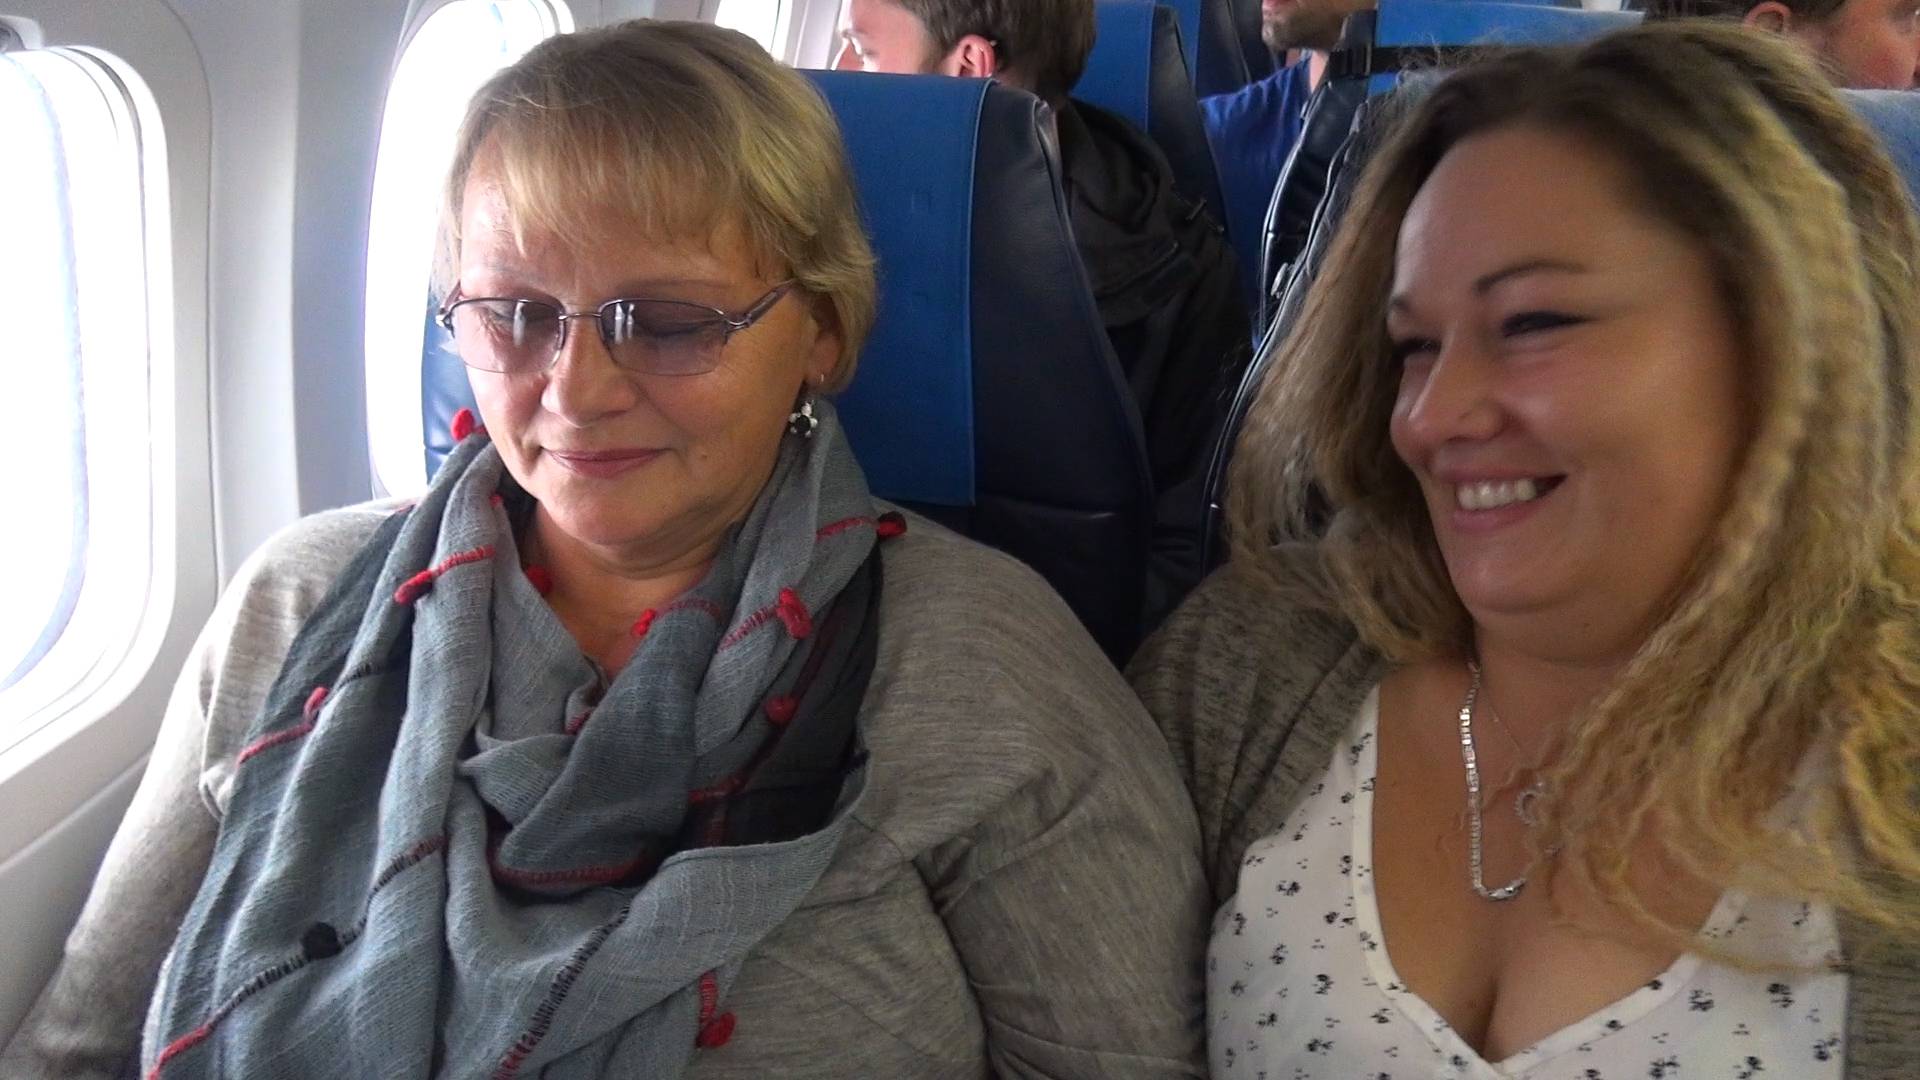 Strah, uzbuđenje i napetost: Kandidatkinje prvi put u avionu